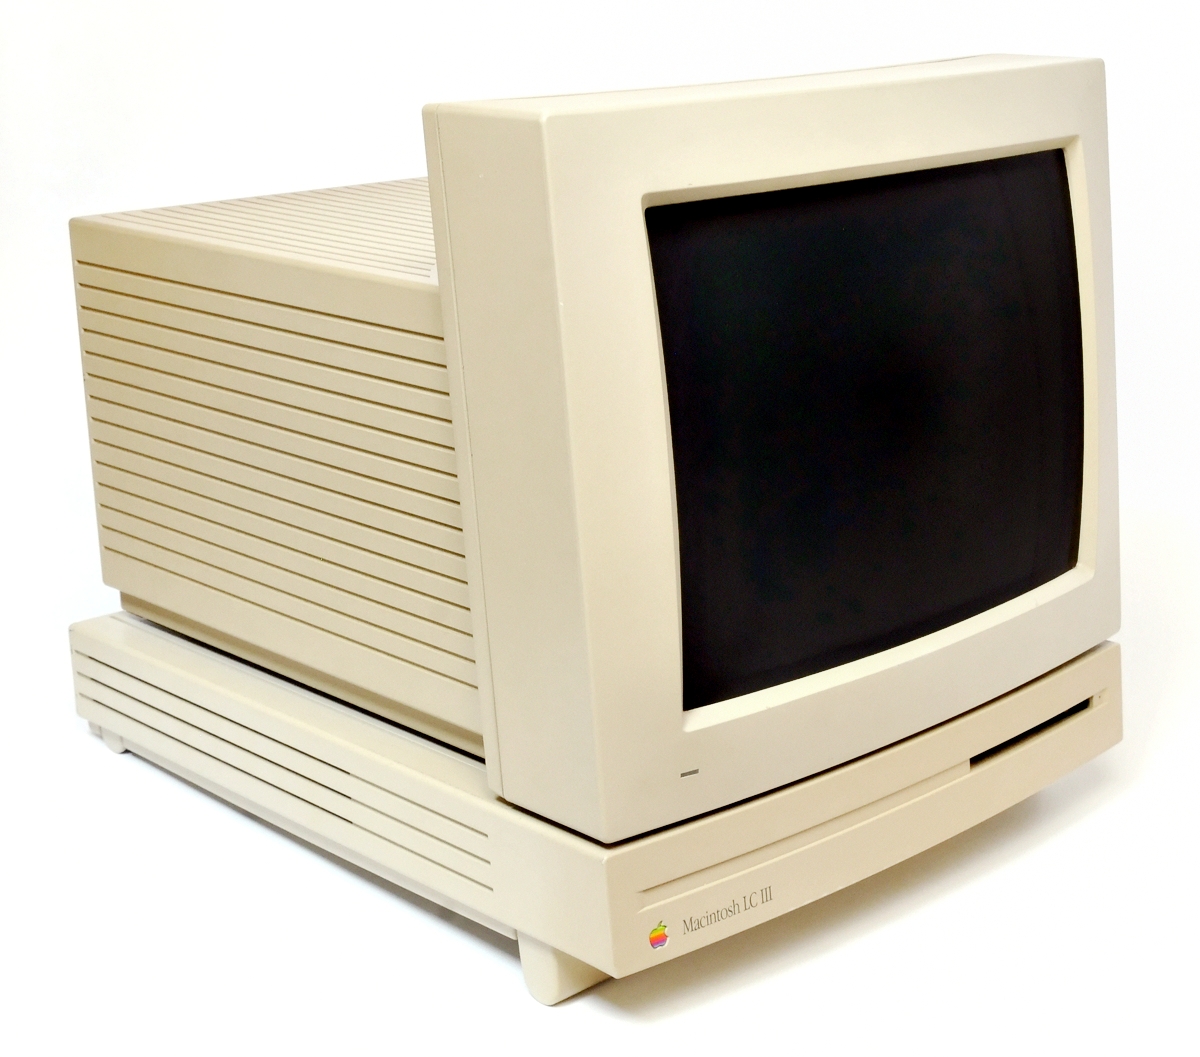 図1-1.Macintosh LC IIIと12インチRGBディスプレイ